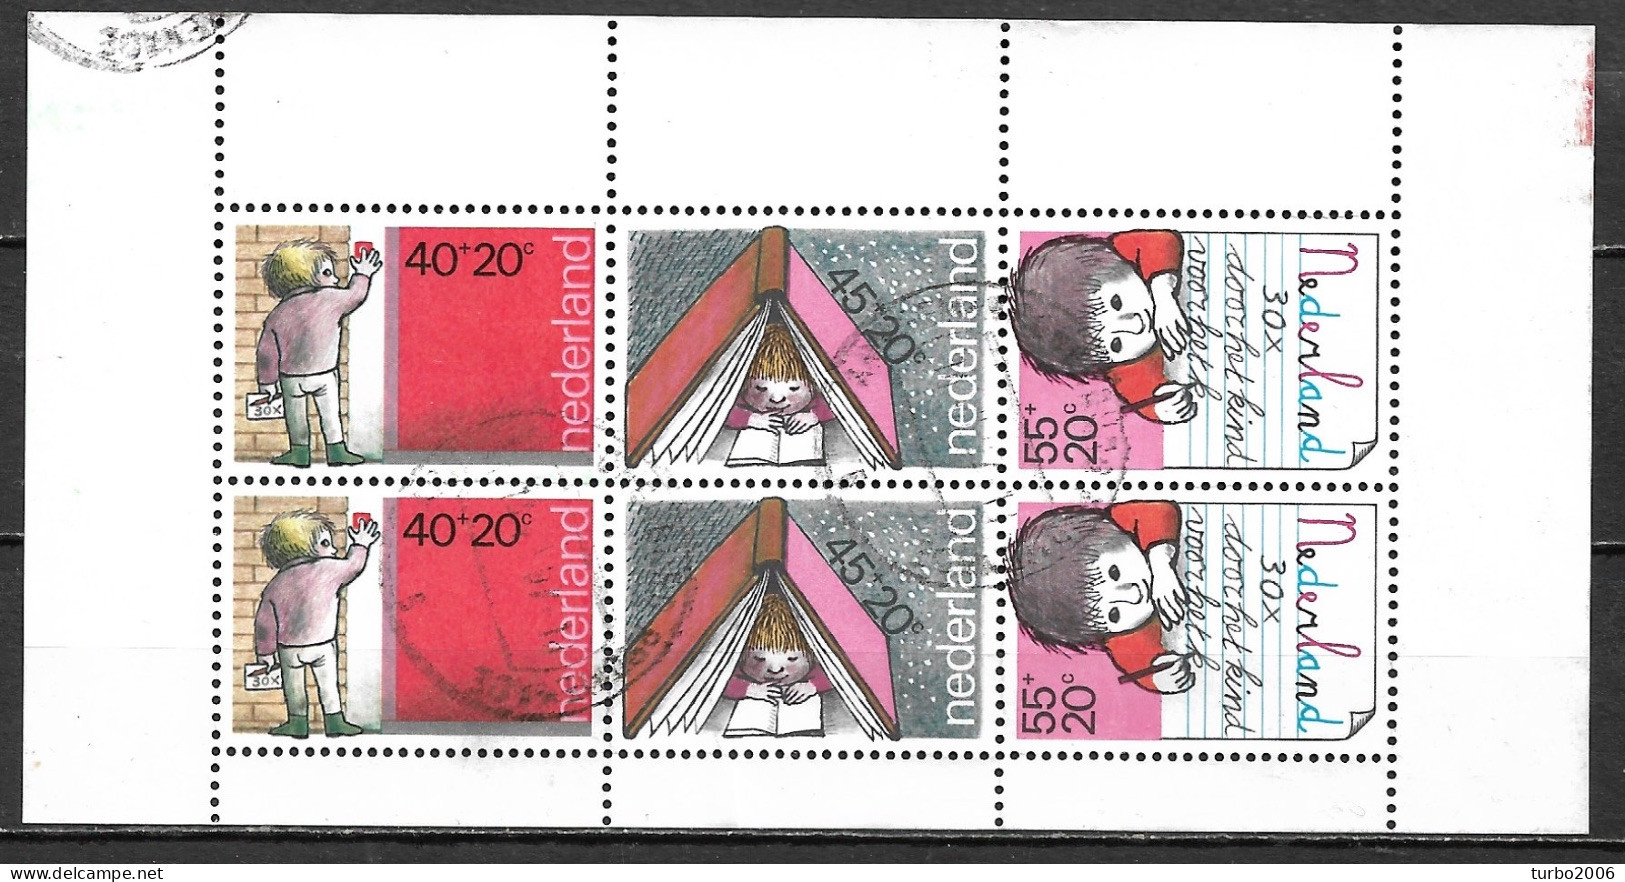 Plaatfout Loodrecht Rood Krasje Rechtsboven In 1978 Velletje Kinderzegels NVPH 1171 PM 3 - Plaatfouten En Curiosa